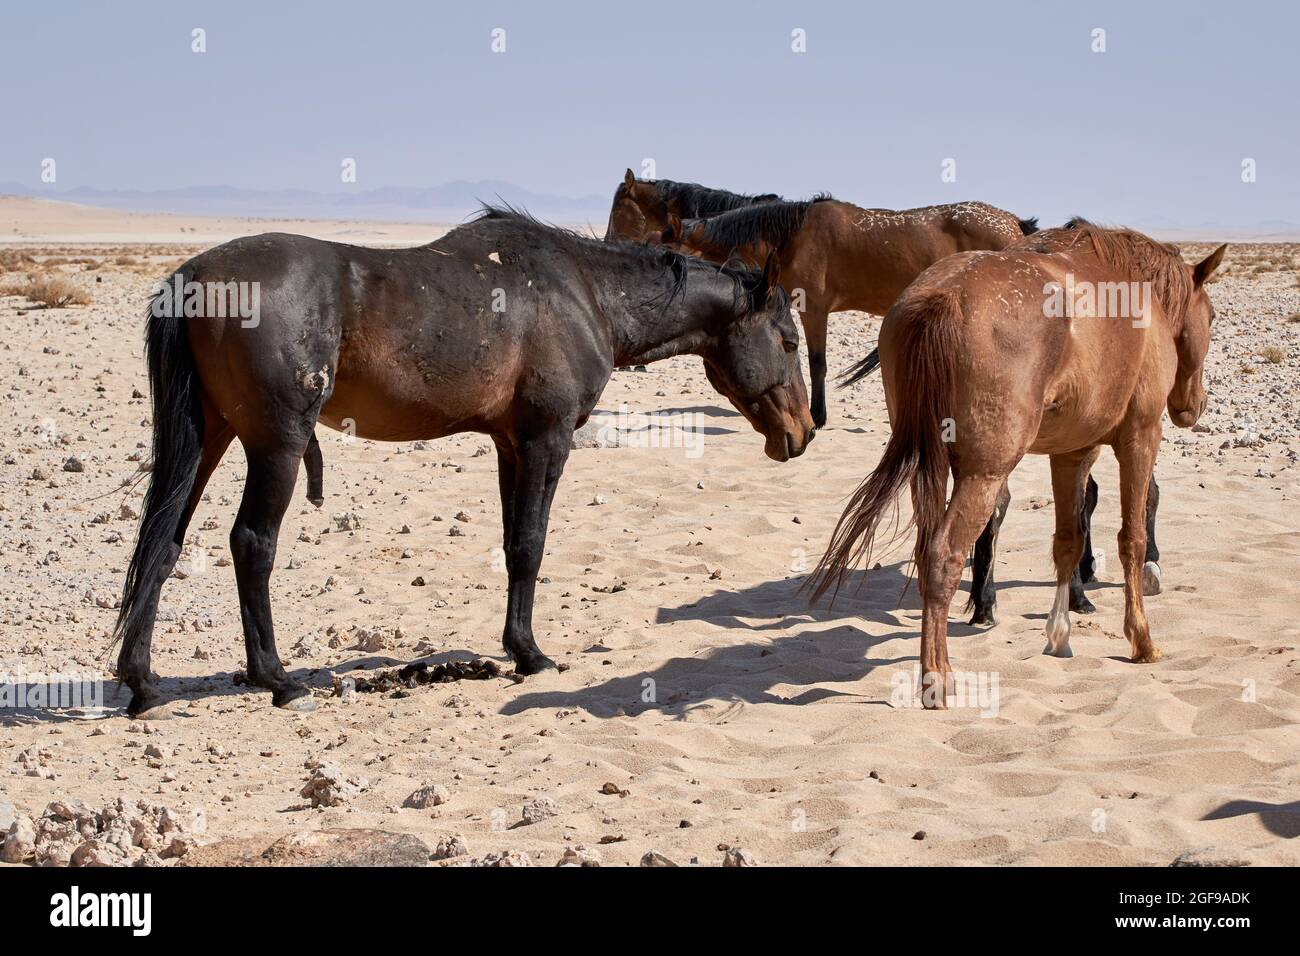 Wild Namib desert horses (Equus ferus caballus) near Aus, Namibia, Africa. Stock Photo